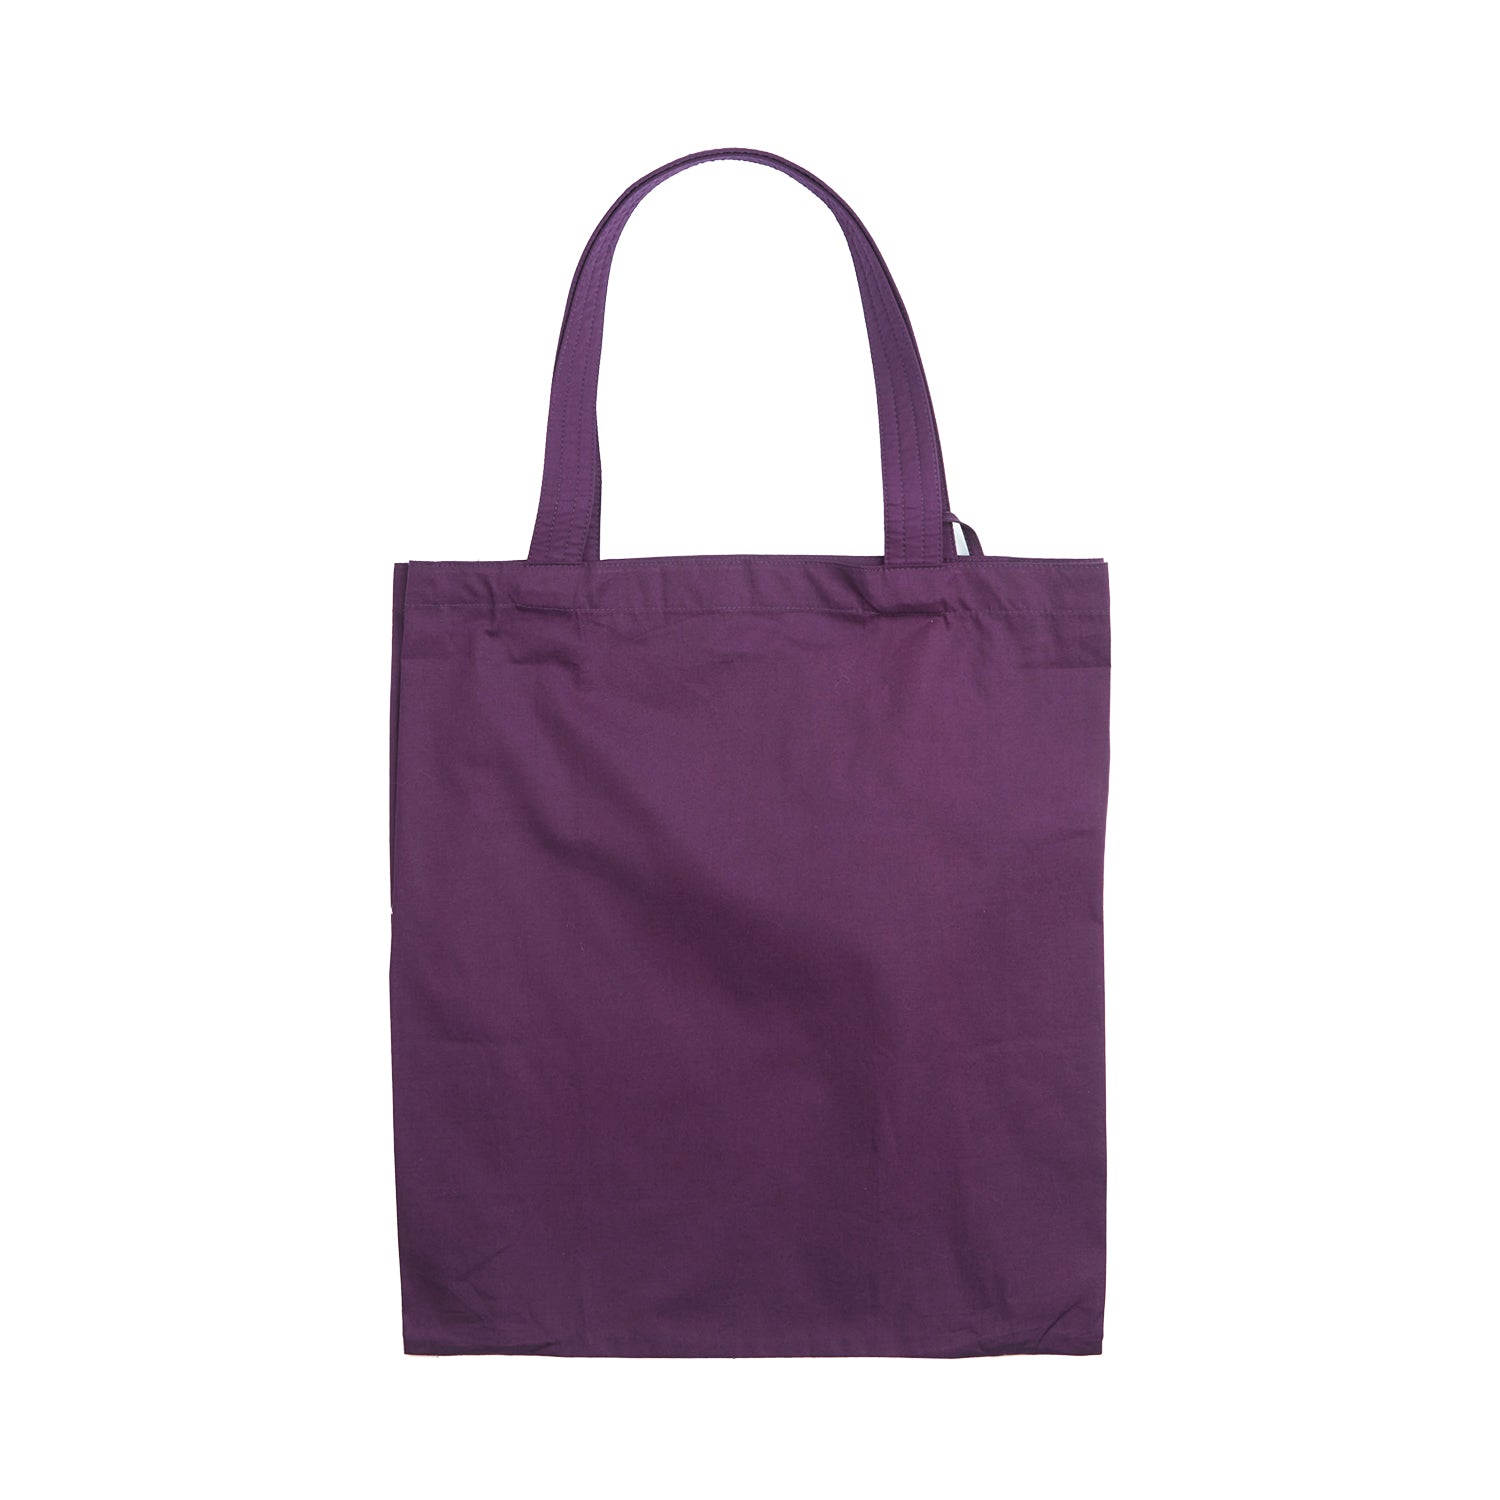 NaRaYa Be Simple Foldable Shopping Bag - NaRaYa